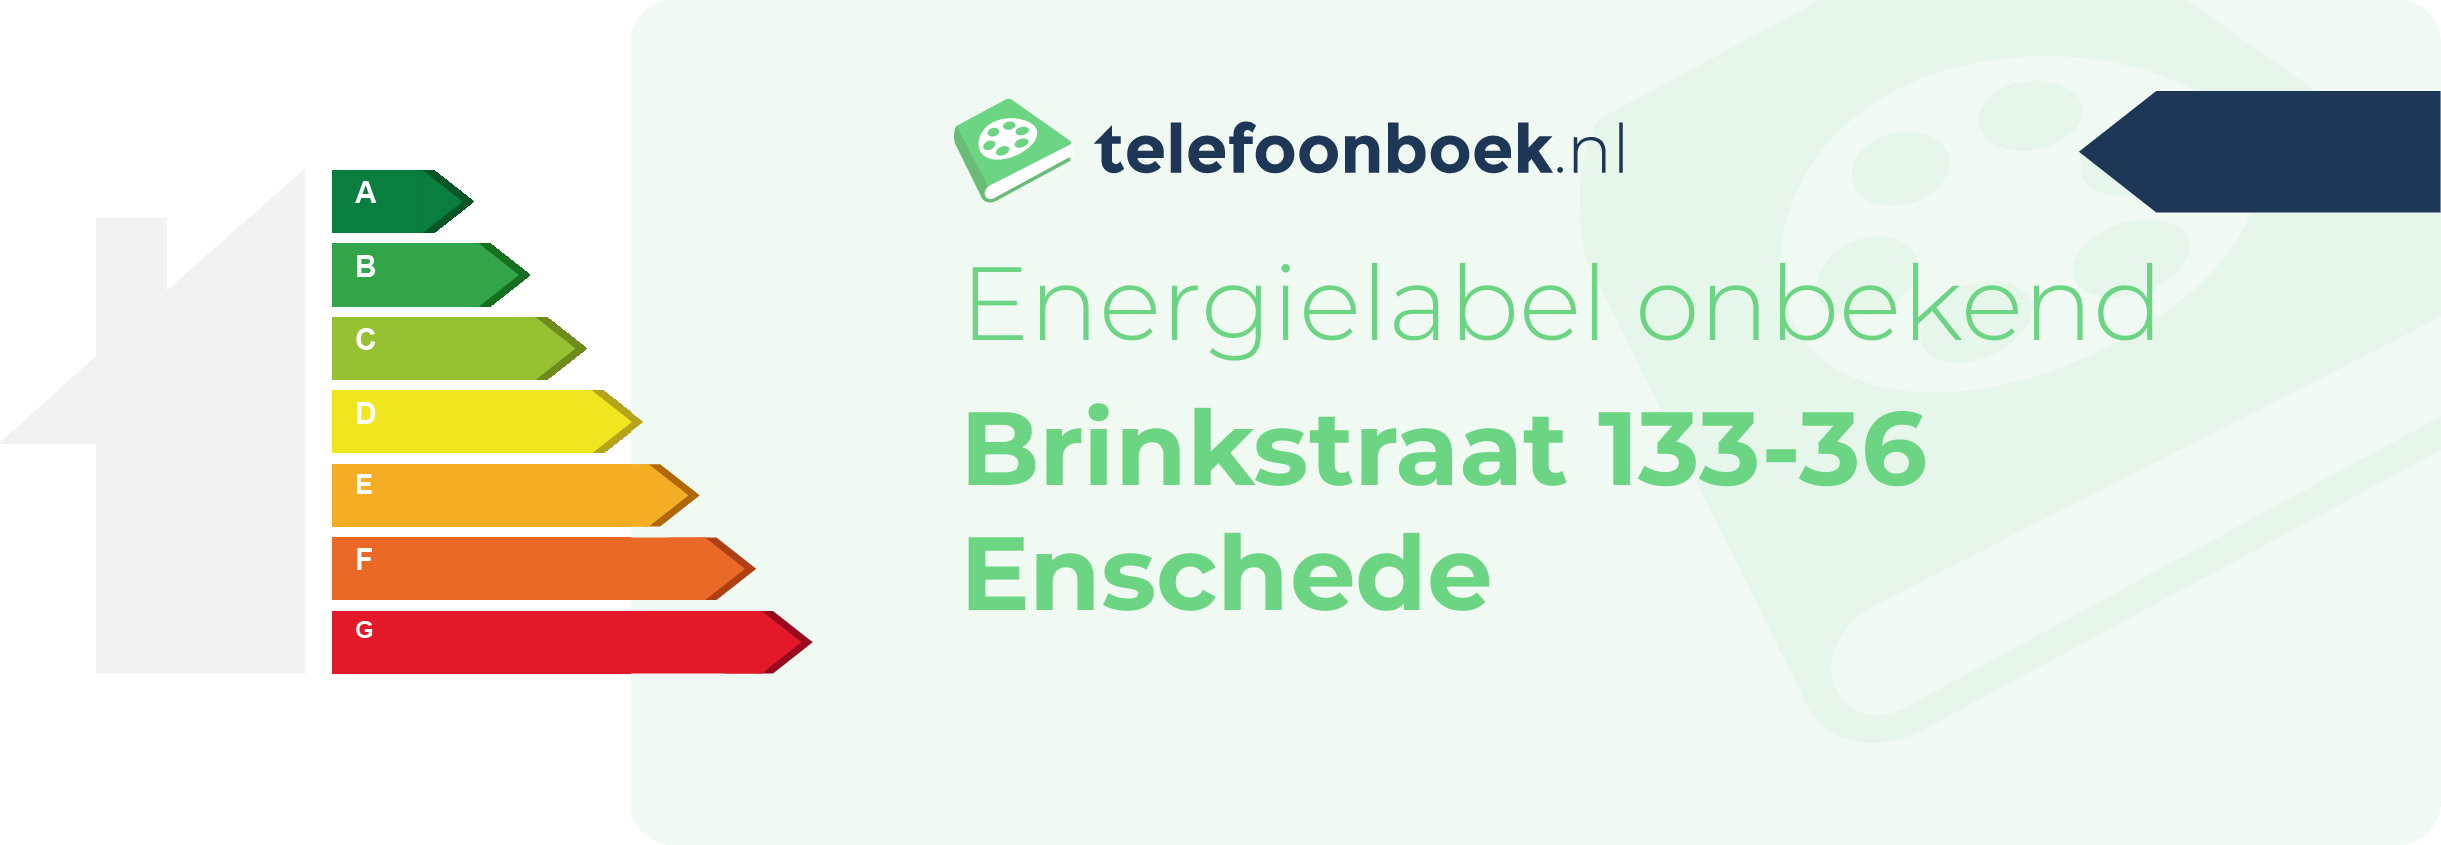 Energielabel Brinkstraat 133-36 Enschede